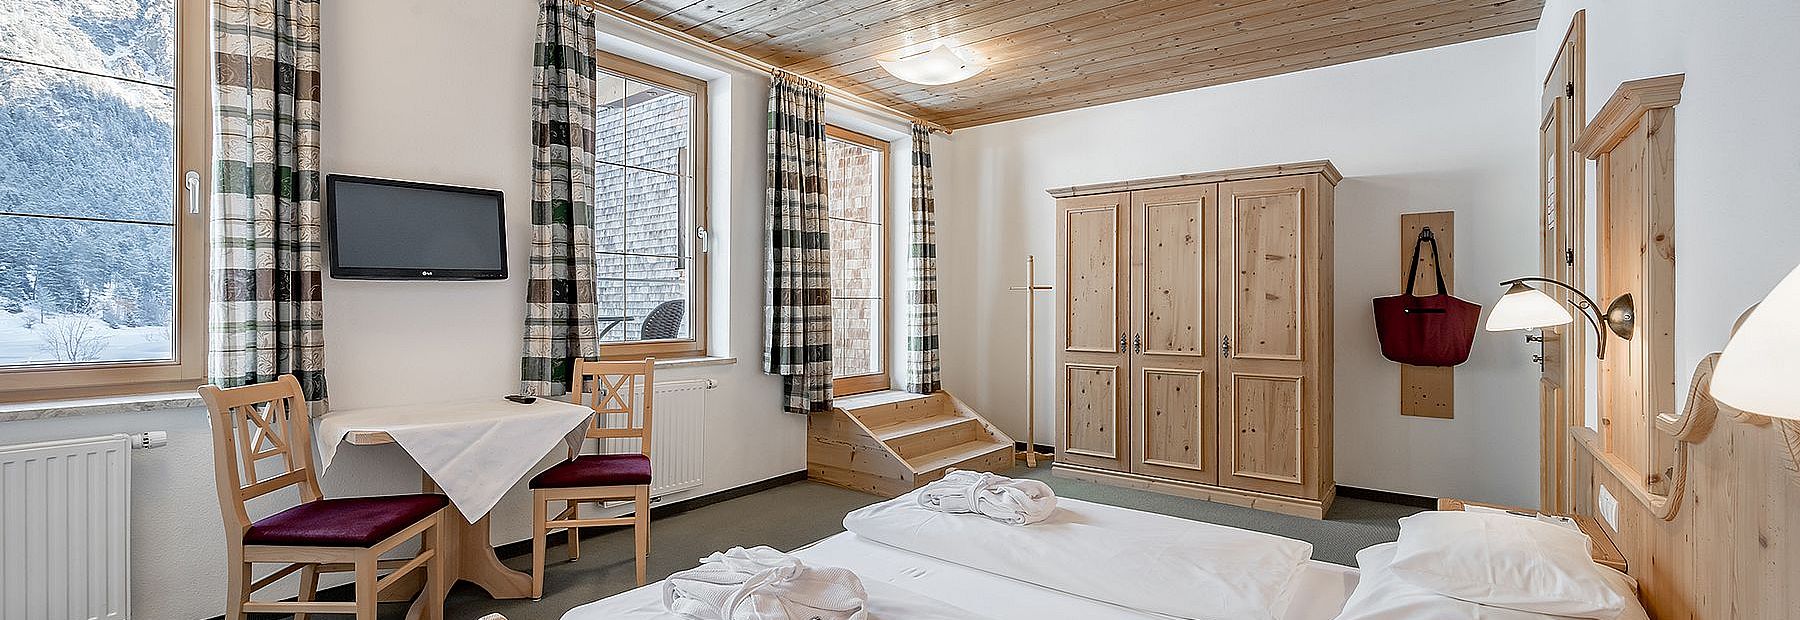 Doppelbett in einem Hotelzimmer mit Holzdecke und Balkon mit Blick auf eine Winterlandschaft